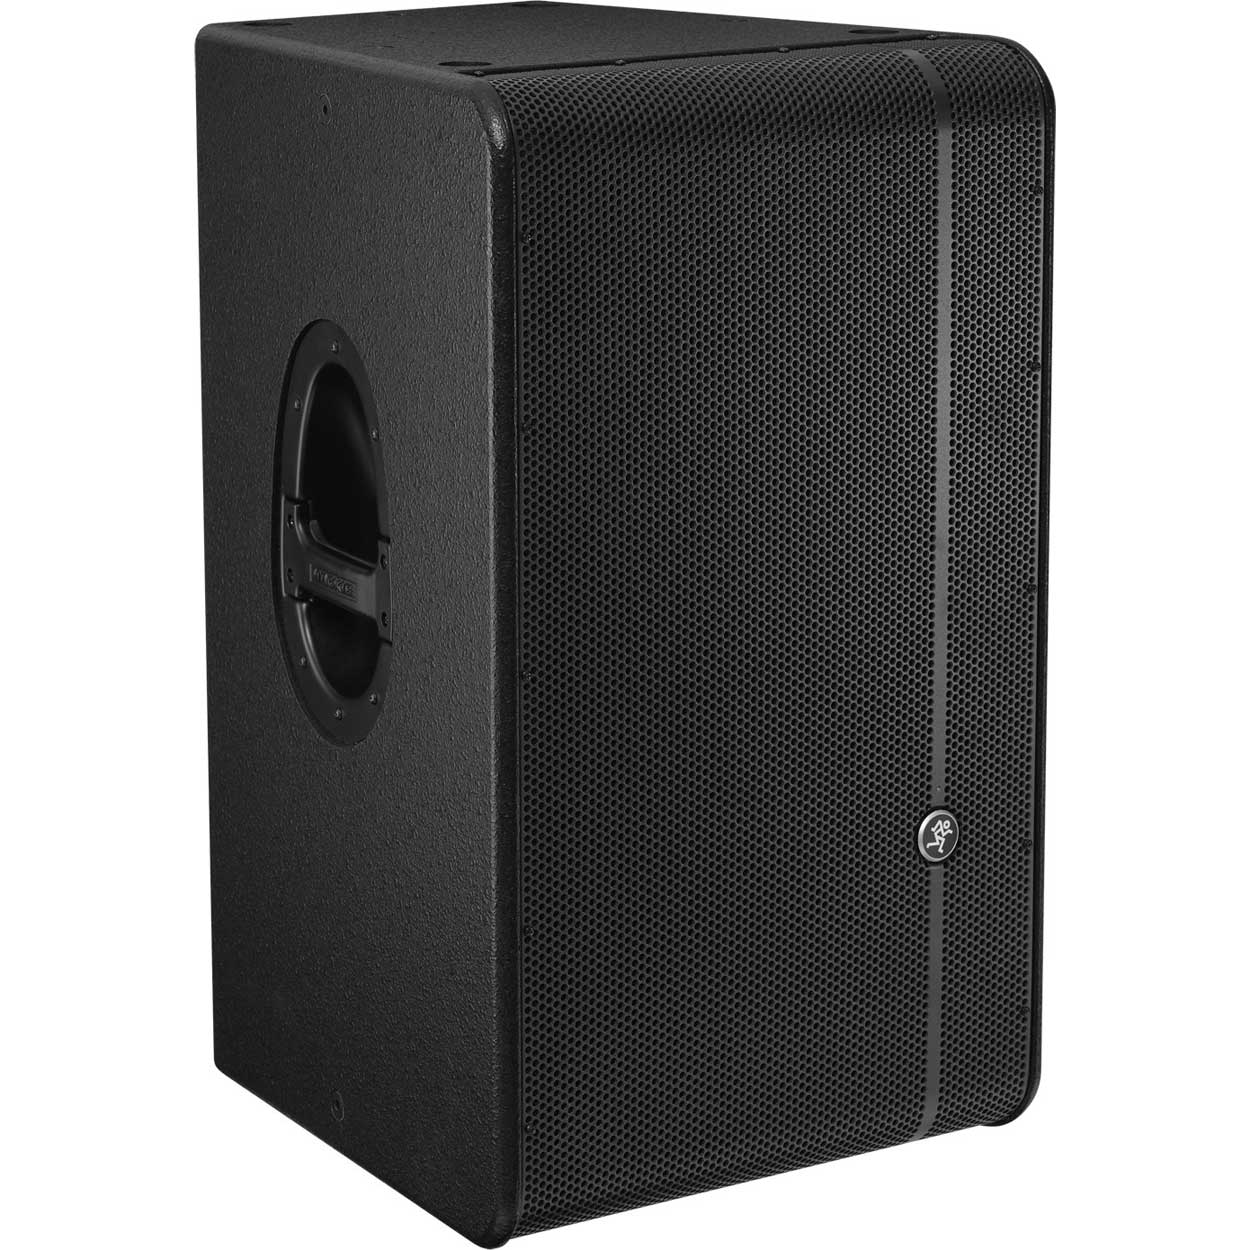 Mackie HD1521 2-Way High Definition Loudspeaker